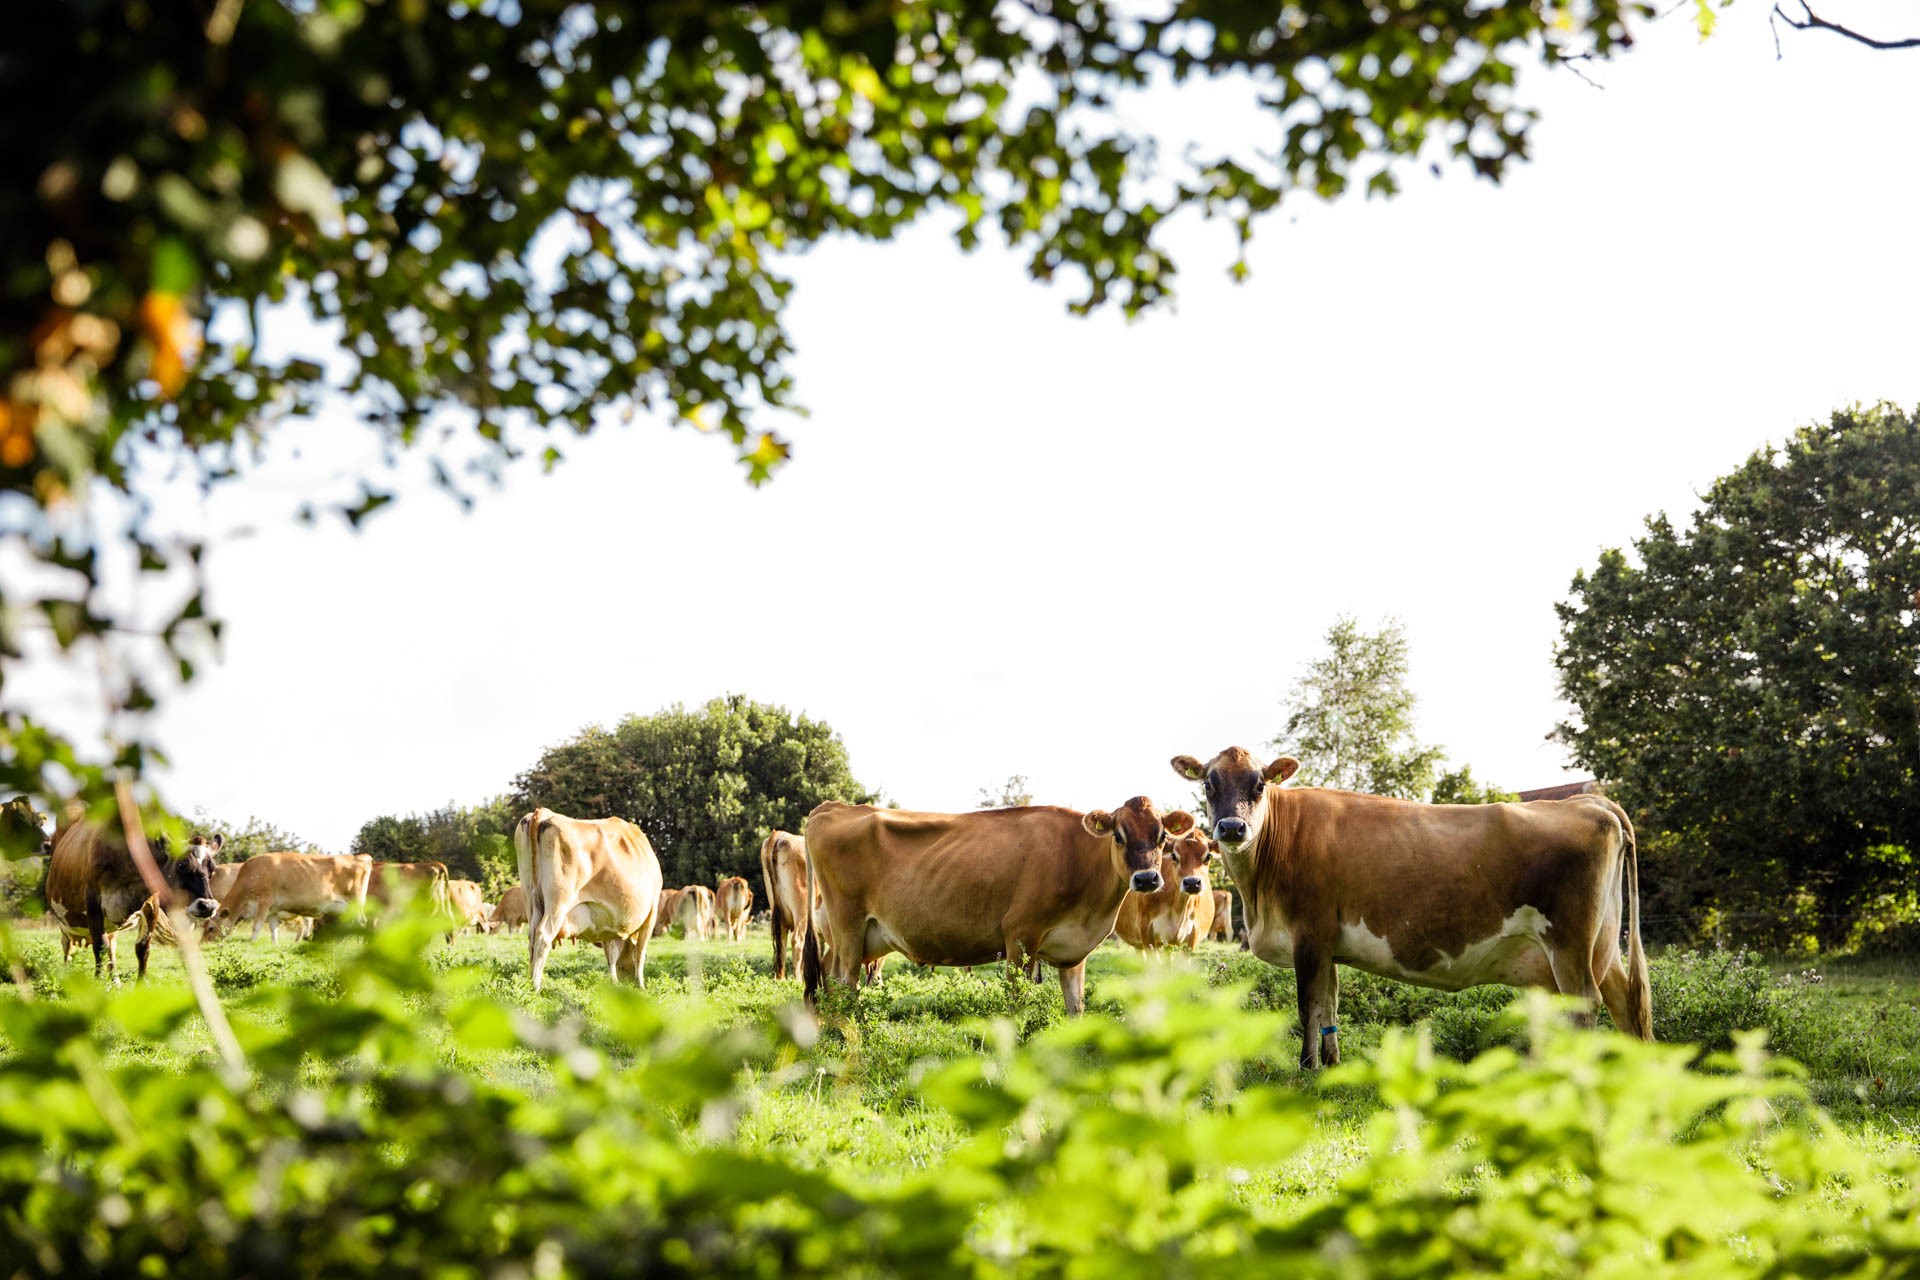 Jersey cows in a field in Jersey